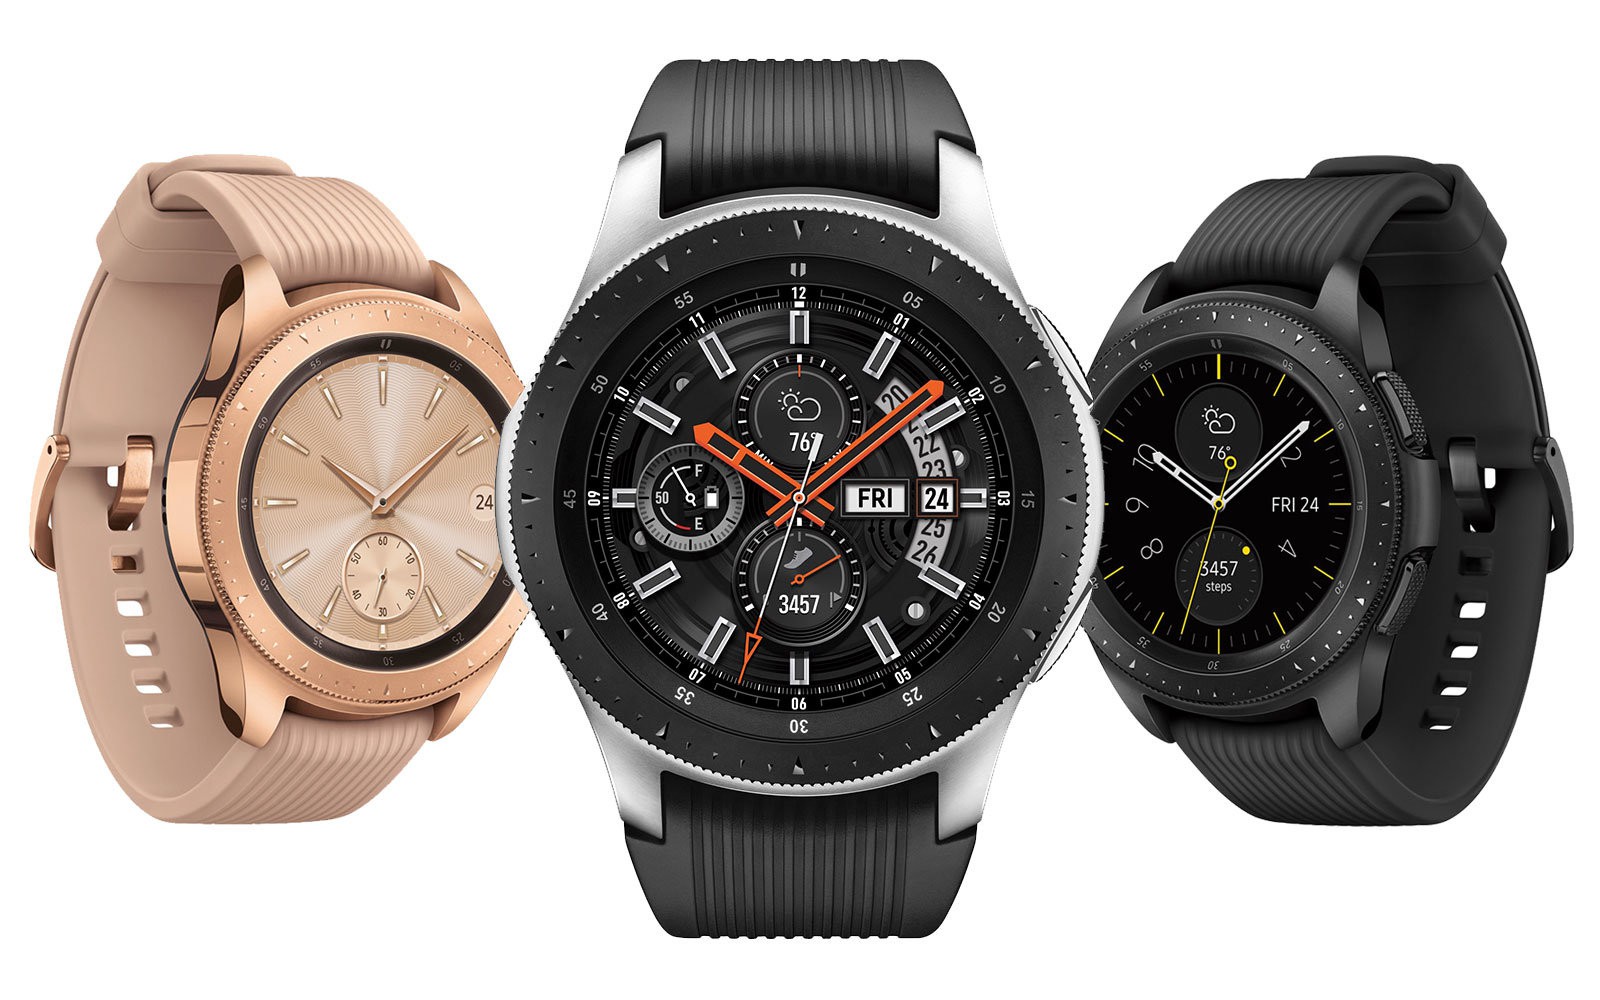 Samsung Galaxy Watch chính thức ra mắt tại Việt Nam - Ảnh 2.